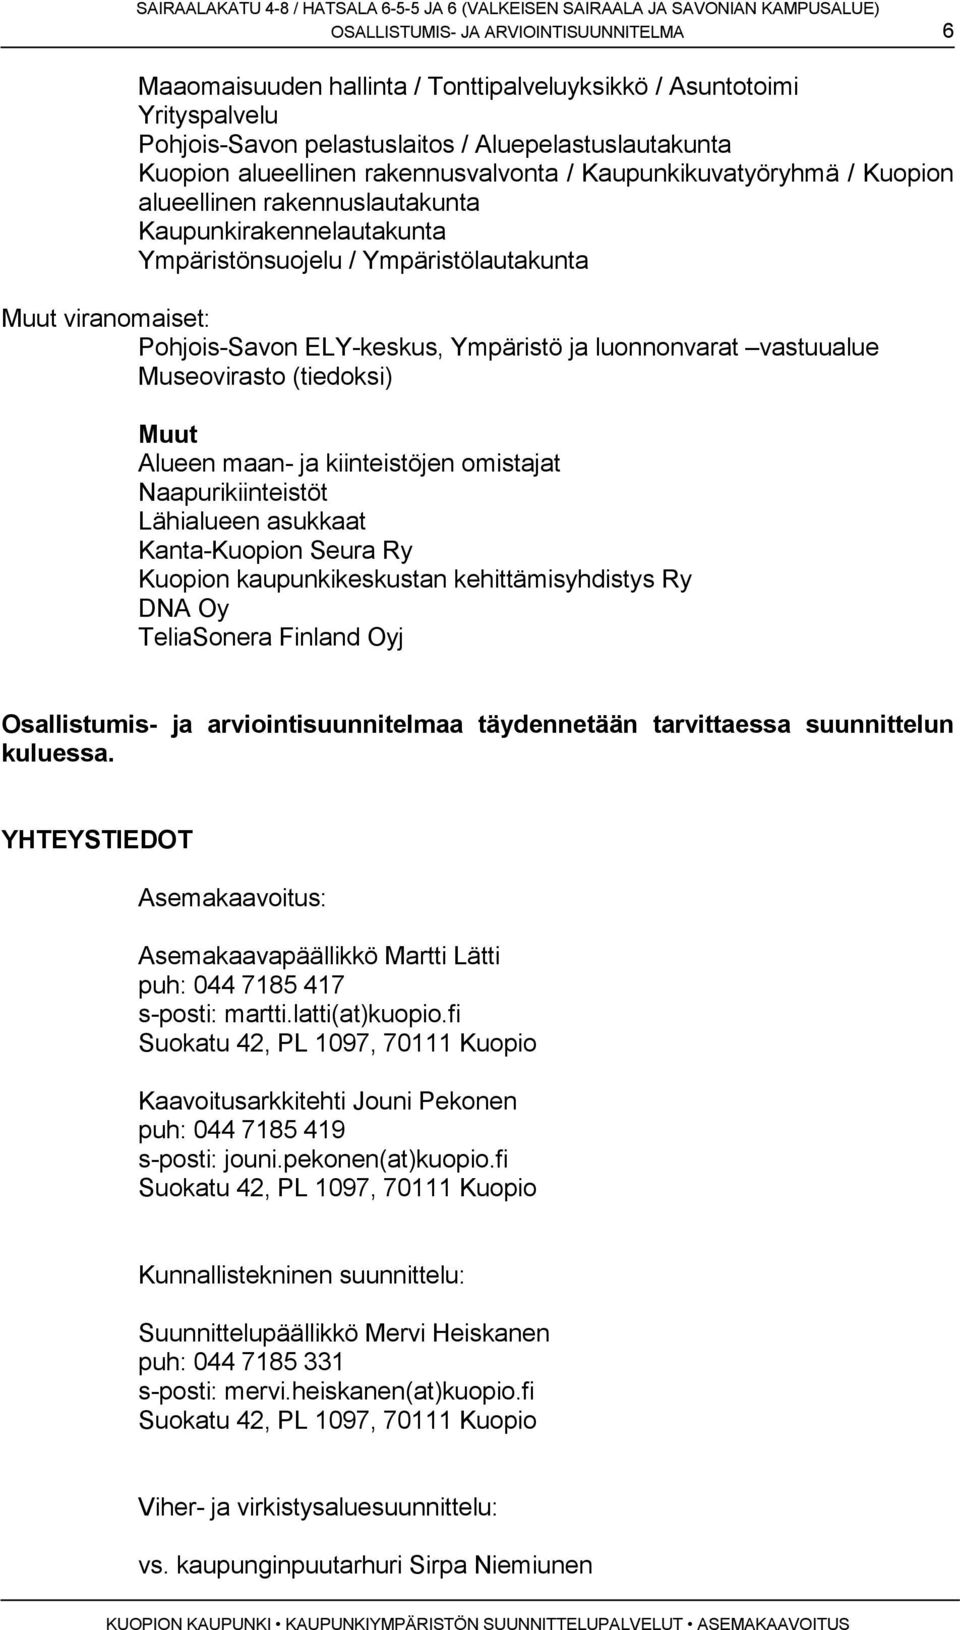 Ympäristö ja luonnonvarat vastuualue Museovirasto (tiedoksi) Muut Alueen maan- ja kiinteistöjen omistajat Naapurikiinteistöt Lähialueen asukkaat Kanta-Kuopion Seura Ry Kuopion kaupunkikeskustan